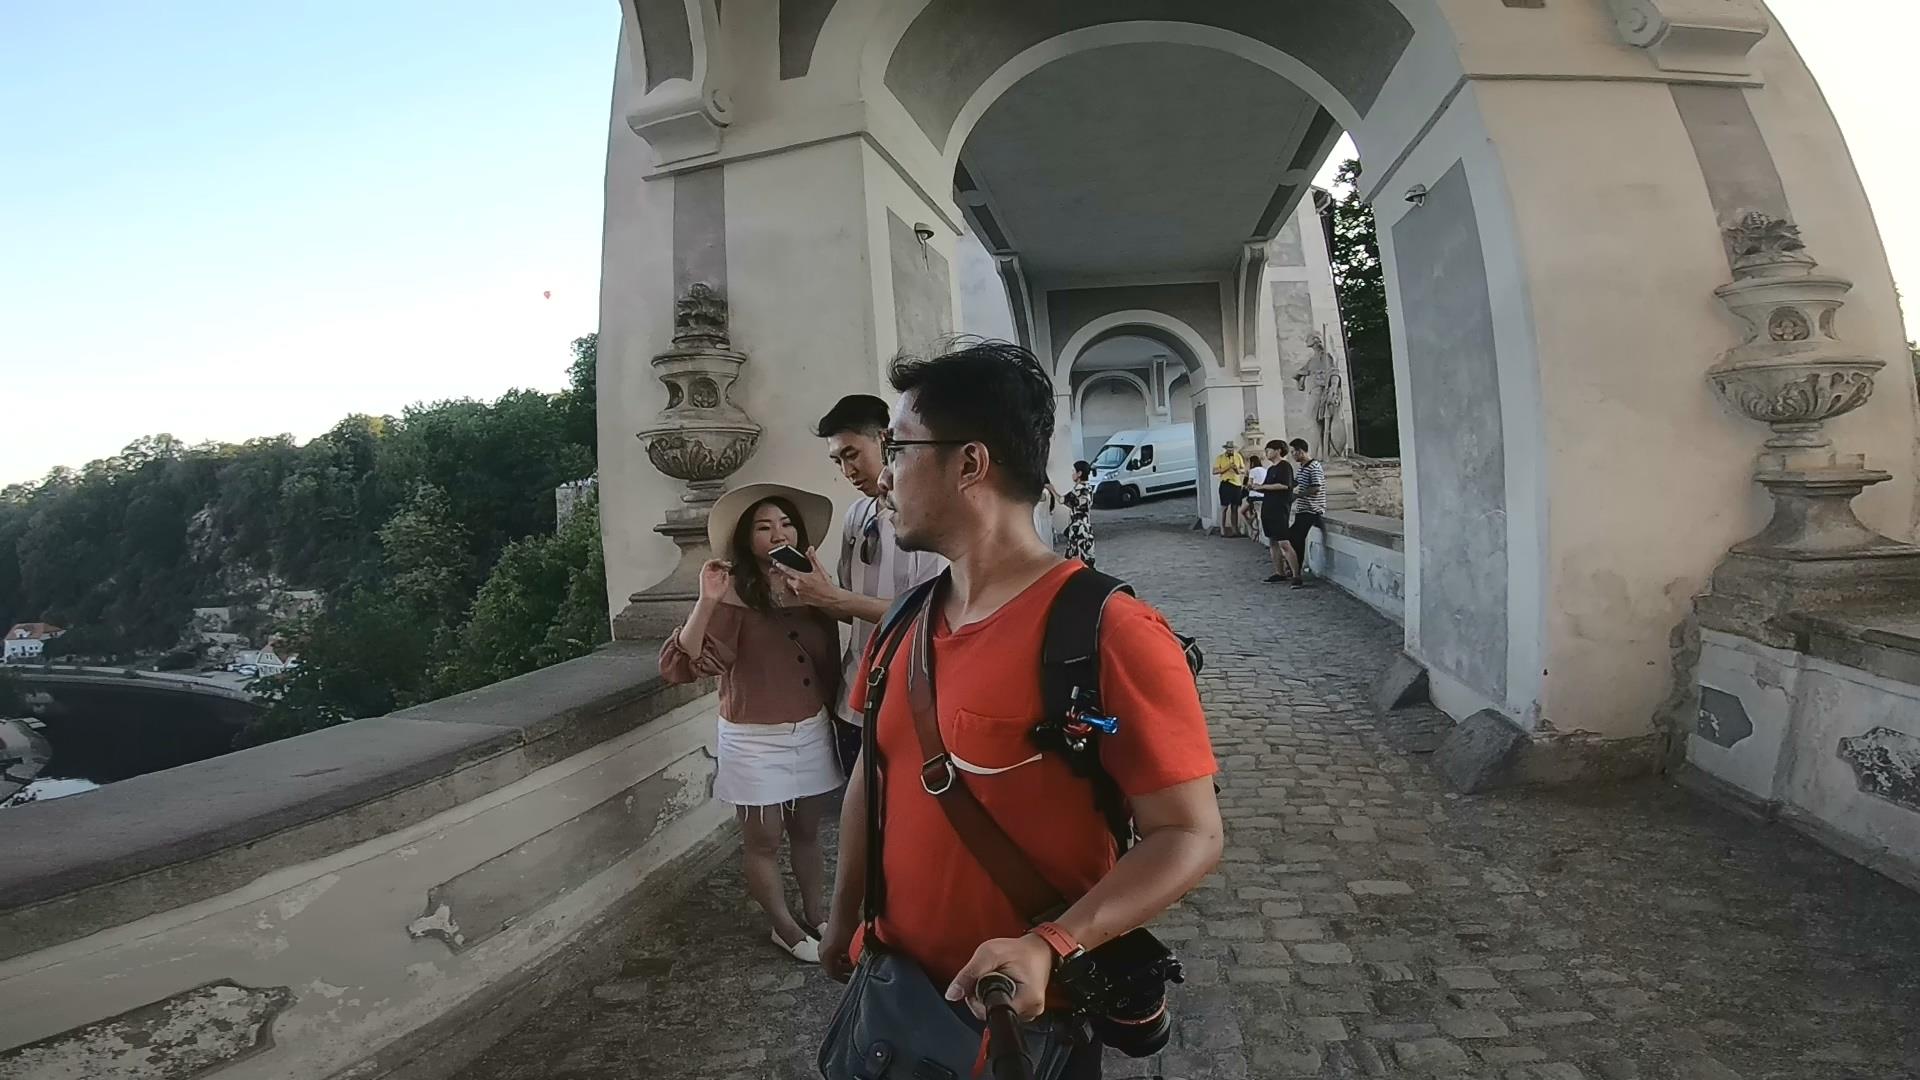 [2019 中歐攝影旅行] Day11 – 薩爾斯堡 Salzburg - 捷克庫倫諾夫 Krumlov、城堡區、老城區